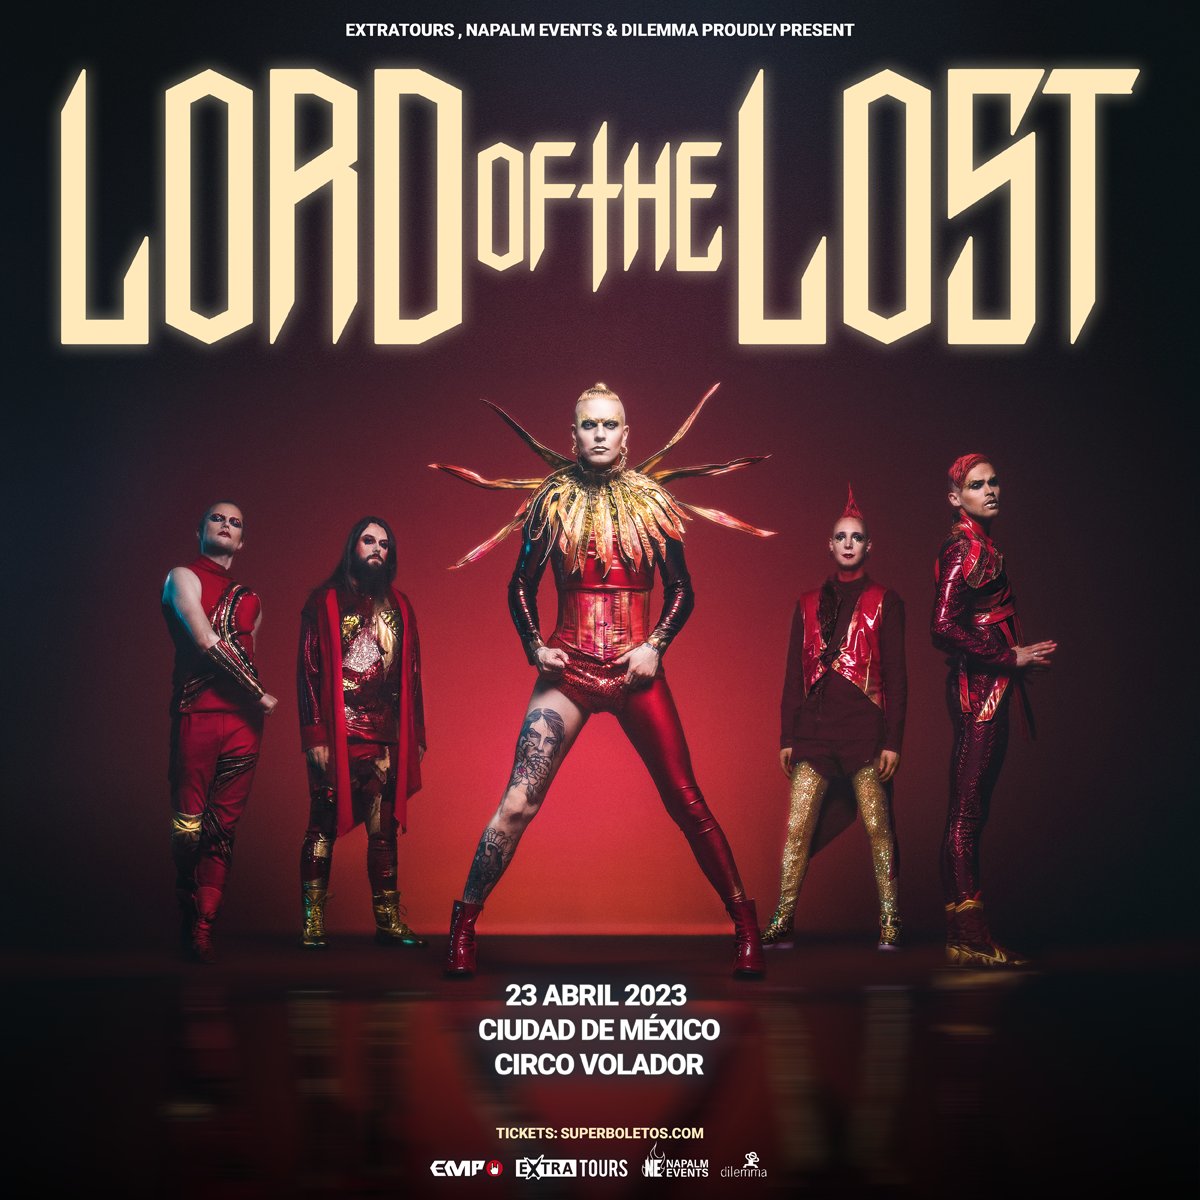 Presentando su nuevo álbum 'Blood & Glitter' 🩸✨ @LordOfTheLost llega a la Ciudad de México 23 de Abril en @circovolador ¡Boletos ya disponibles! Compra en línea: bit.ly/LOTLCDMX23 Y también disponibles en taquilla de Circo Volador